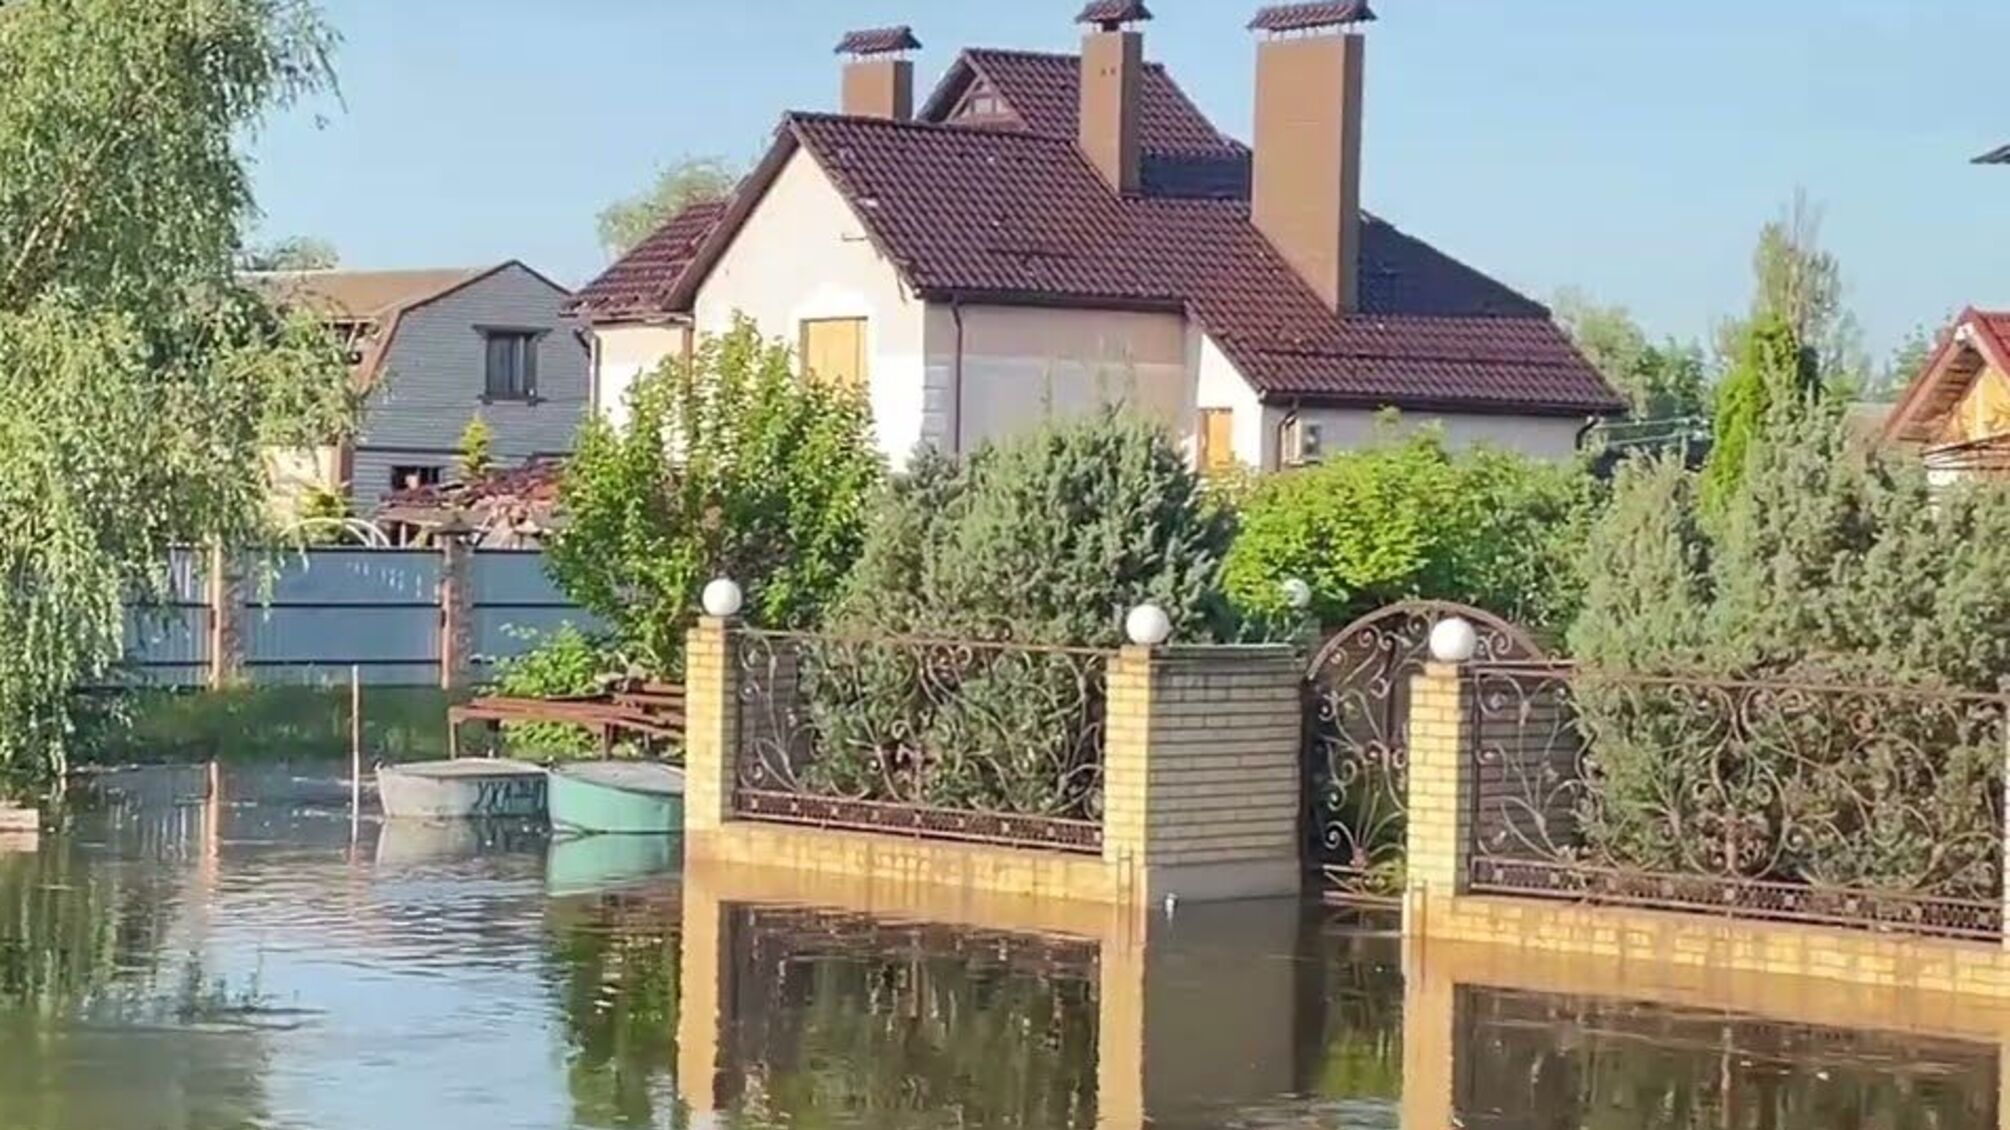 Херсонщина приходит в себя после потопа: в сети появились видео из затопленных домов